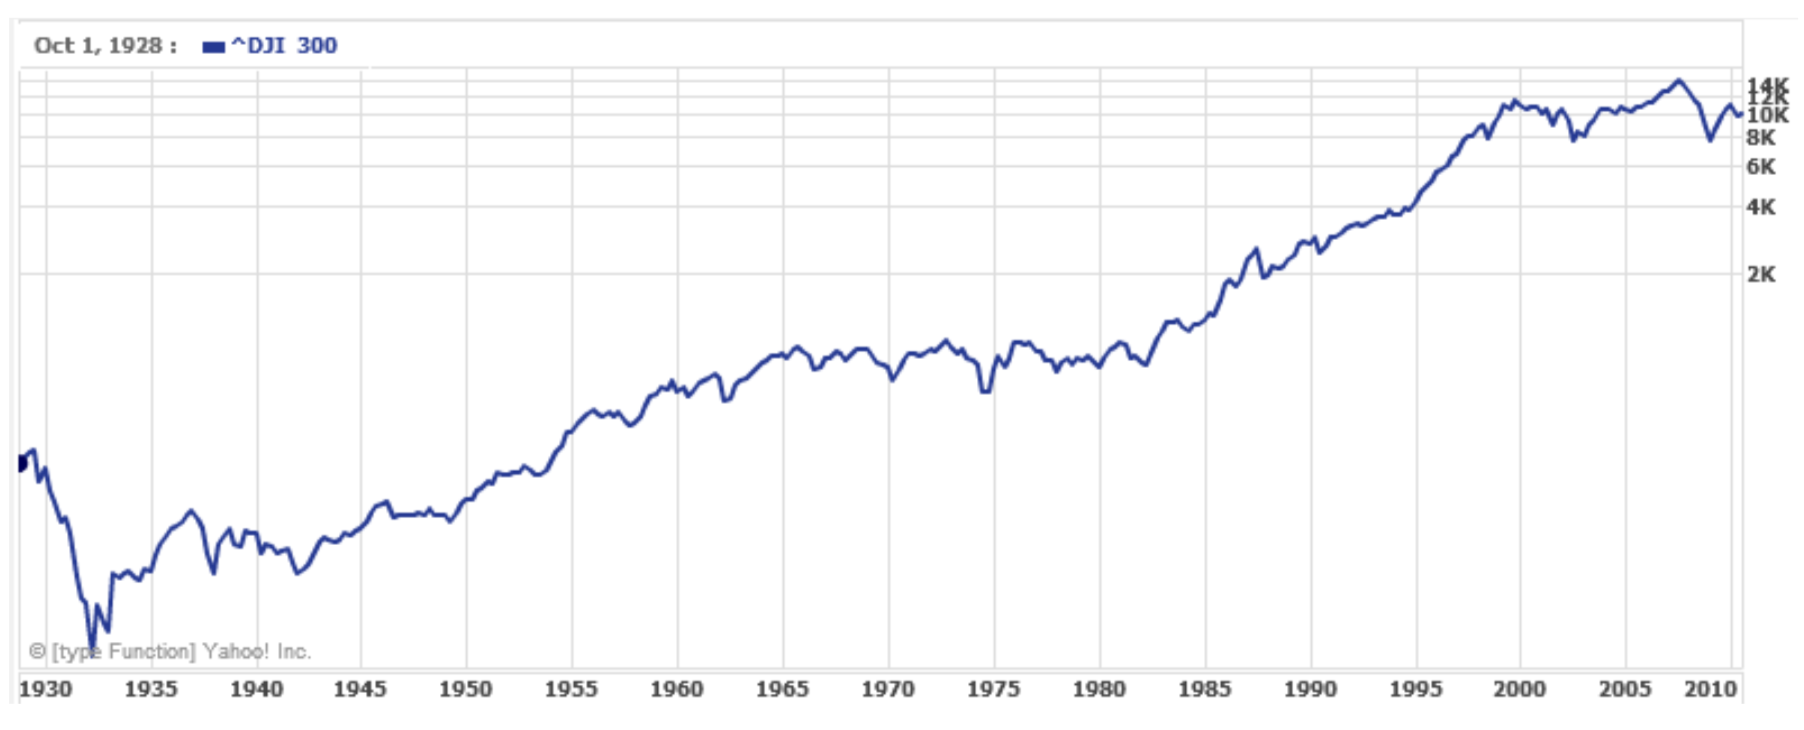 Un gráfico que muestra el Promedio Industrial Dow Jones de 1928 a 2010. El eje vertical va de 0 a 14 mil, con marcas de garrapata logarítmicamente espaciadas La gráfica parece estar aumentando aproximadamente lineal, pero con una gran caída en 1930, y caídas de aspecto más pequeño en 2000 y 2008.